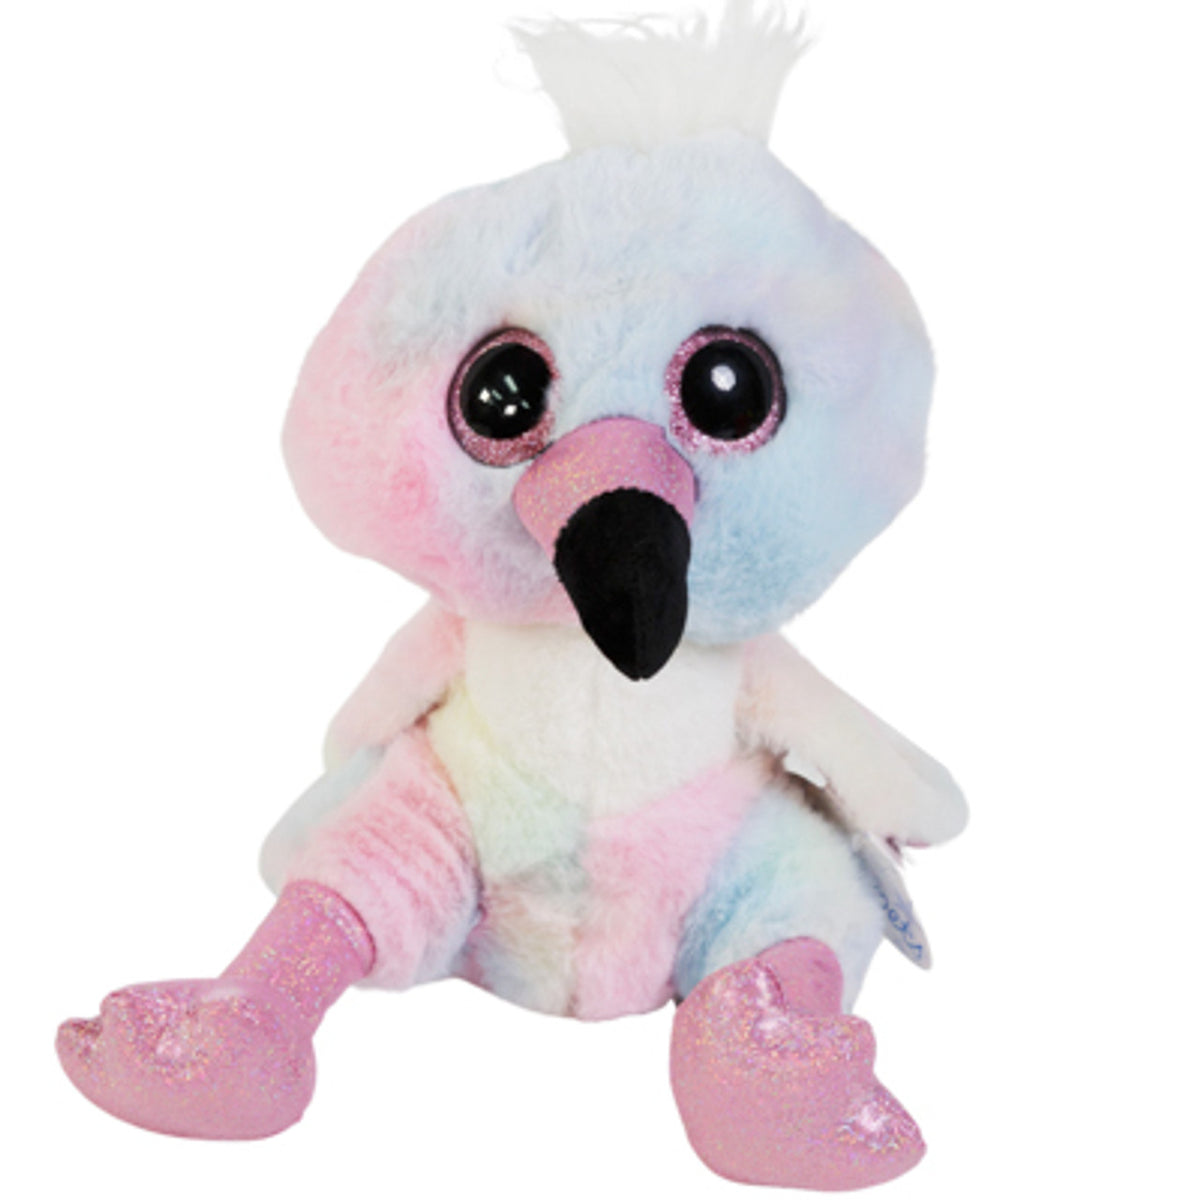 Wishpets 9” Flamingo  Plush Toy - Look At Those Eyes!